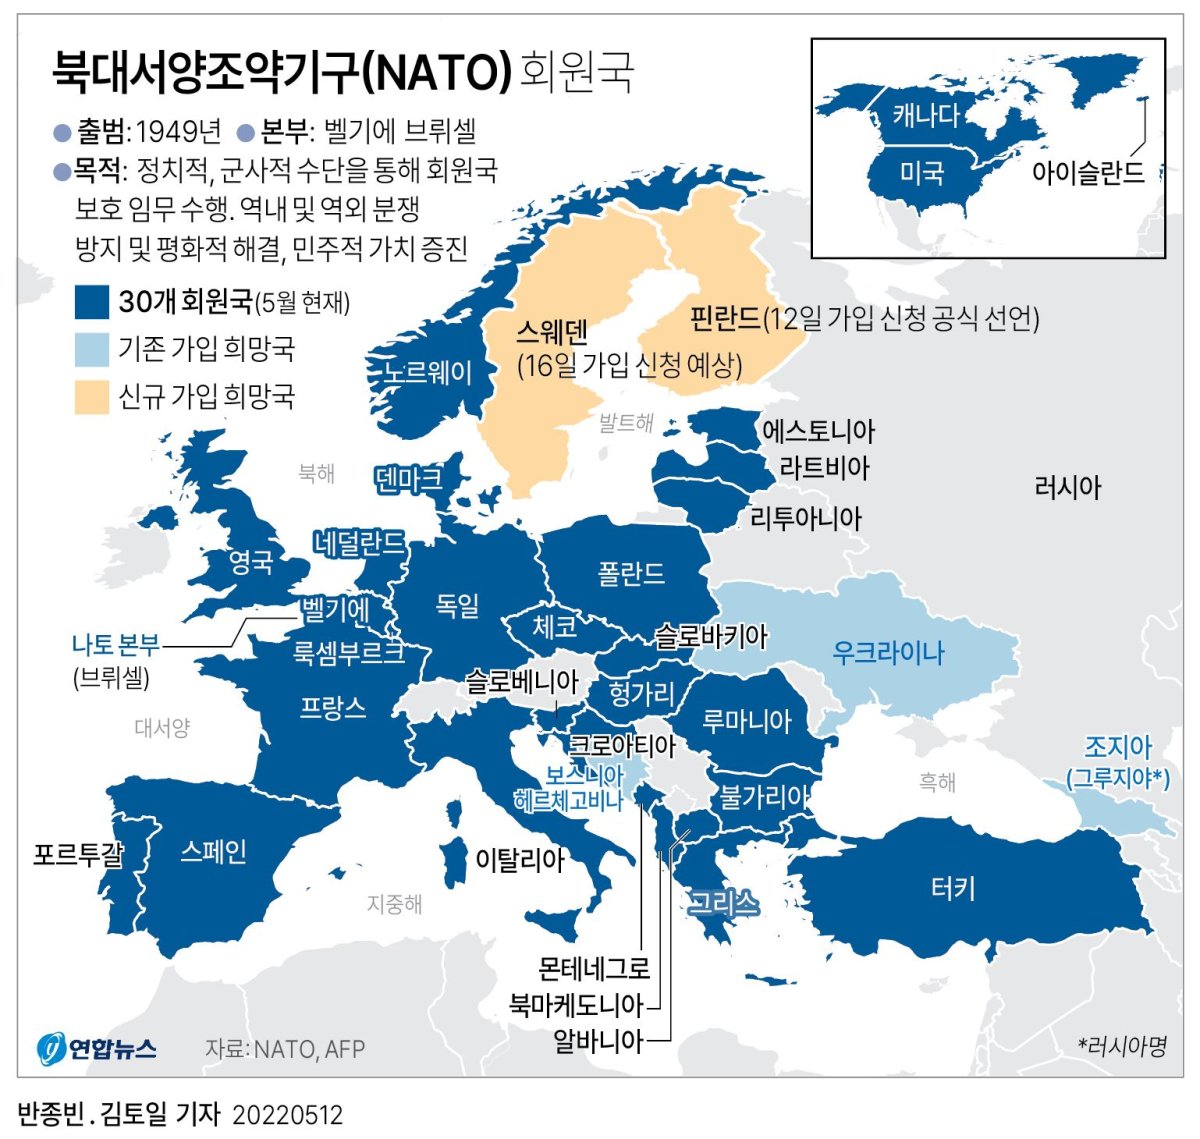 [그래픽] 북대서양조약기구(NATO) 회원국